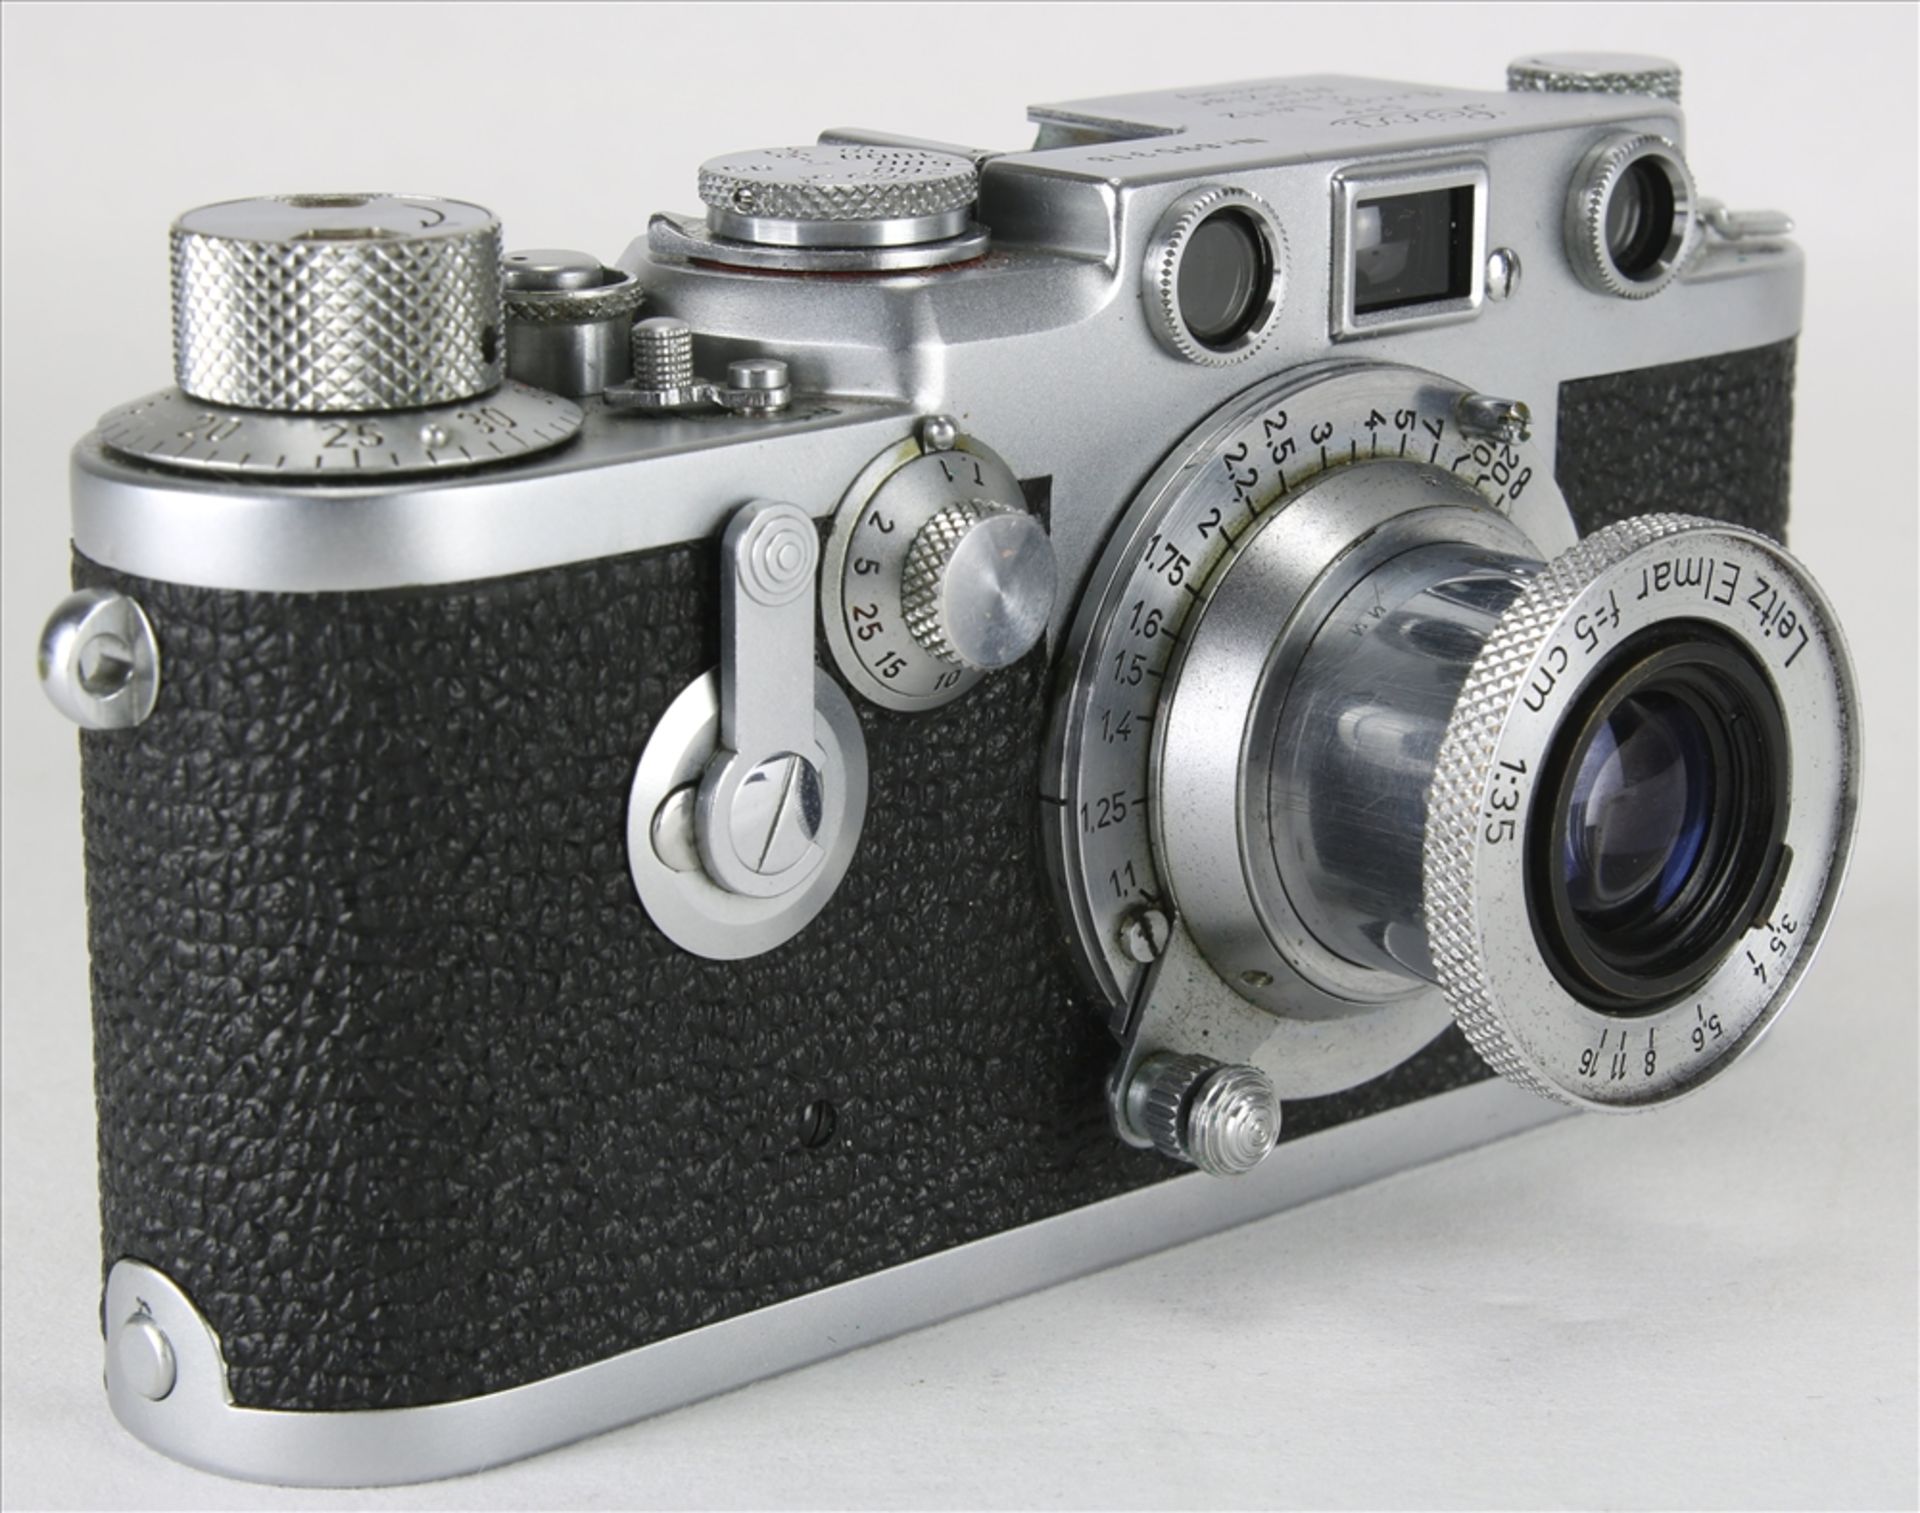 Leica III f vintage Kamera Ernst Leitz GmbH Wetzlar 1954. Nummer 695316. Elmar f=5, 1:3,5 - Bild 4 aus 6